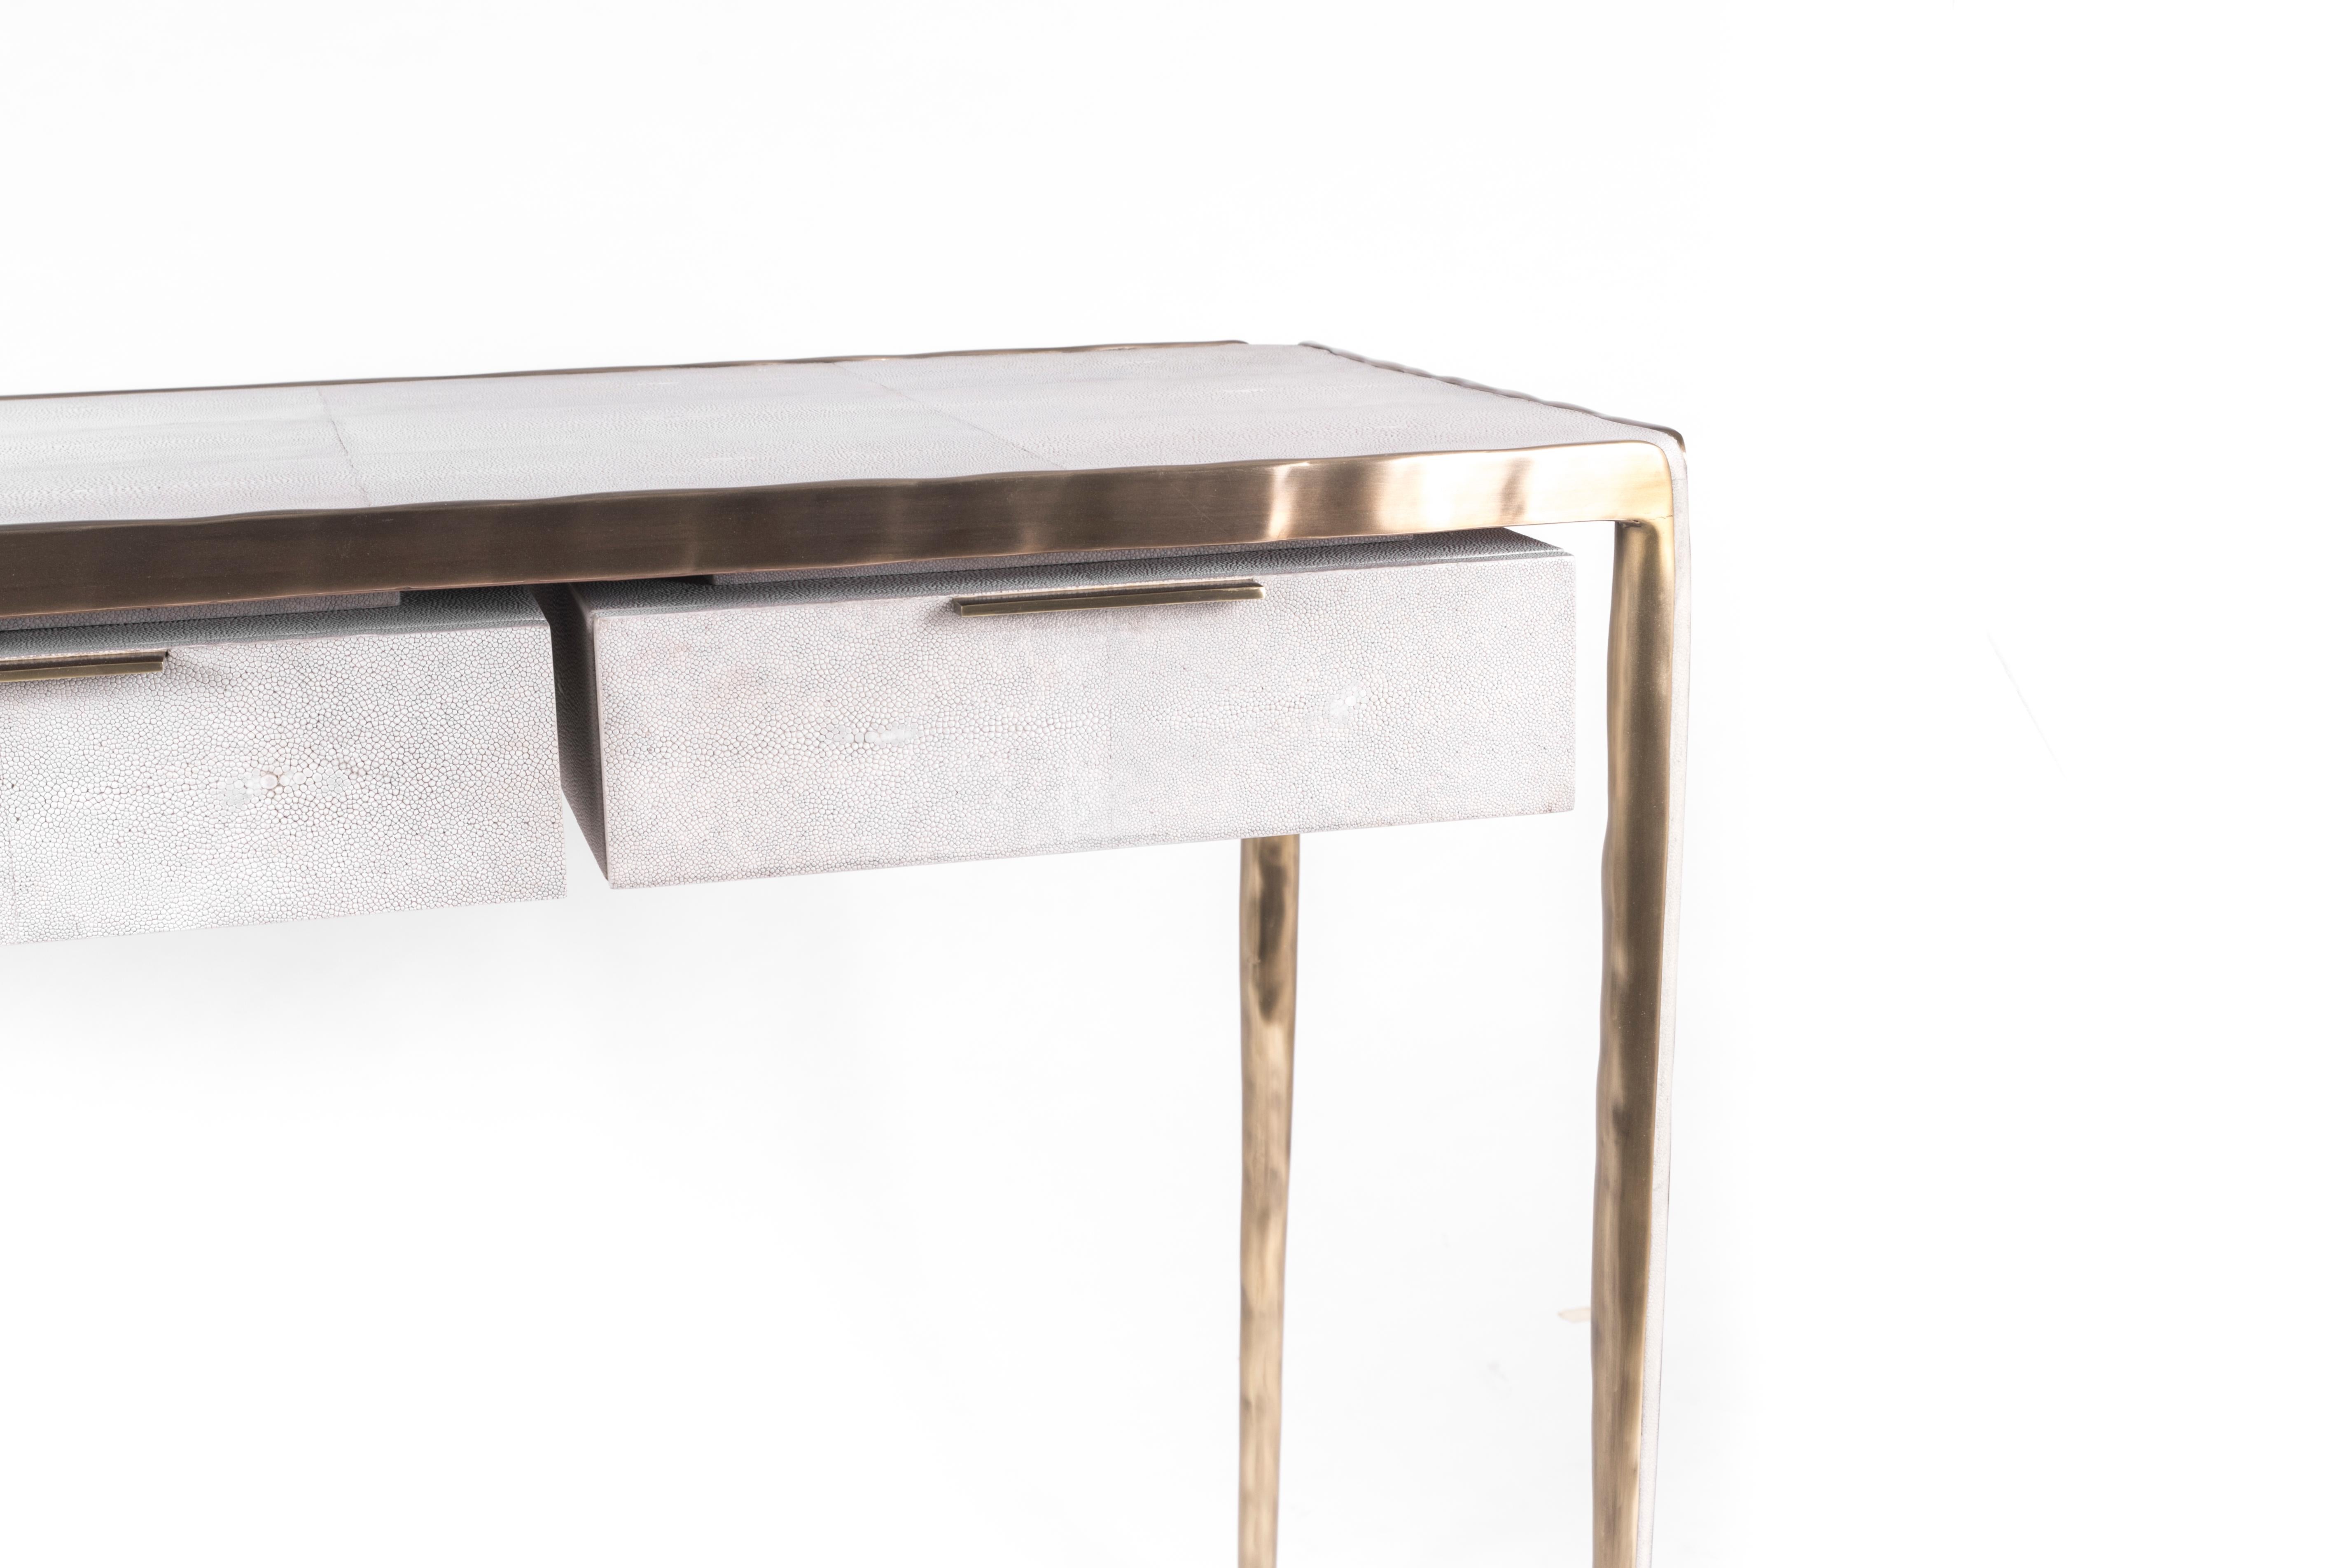 Das schlichte, aber elegante Design des Melting-Schreibtisches macht ihn zu einem anpassungsfähigen, neutralen Möbelstück. Die cremefarbene Chagrinplatte ist mit einer unregelmäßigen Oberfläche aus Bronze-Patina-Messing umrahmt, die den